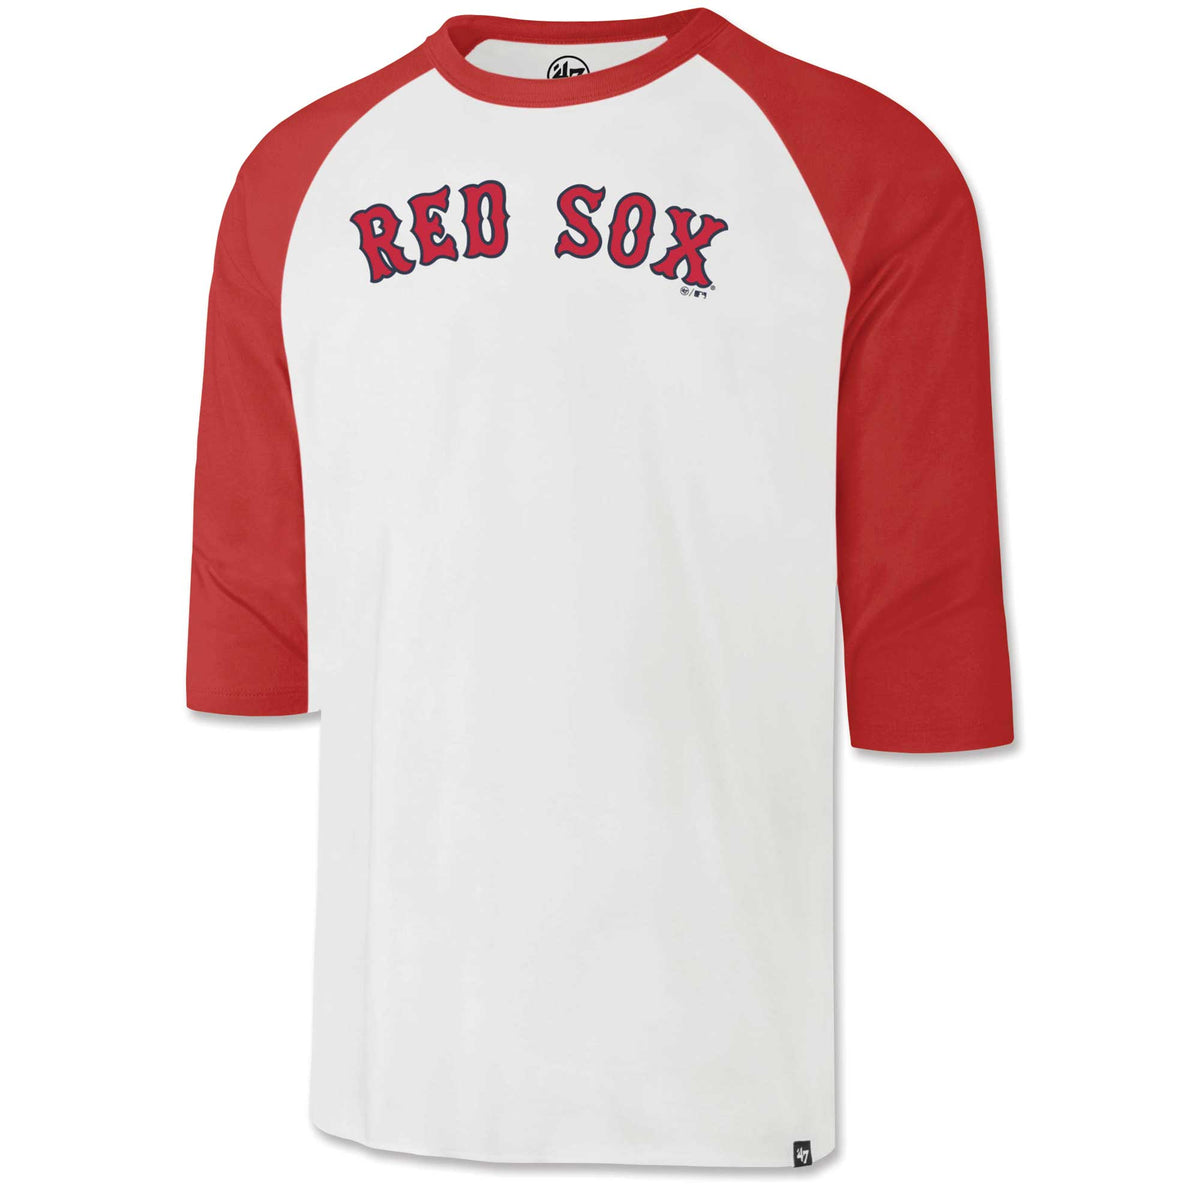 red sox baseball shirt